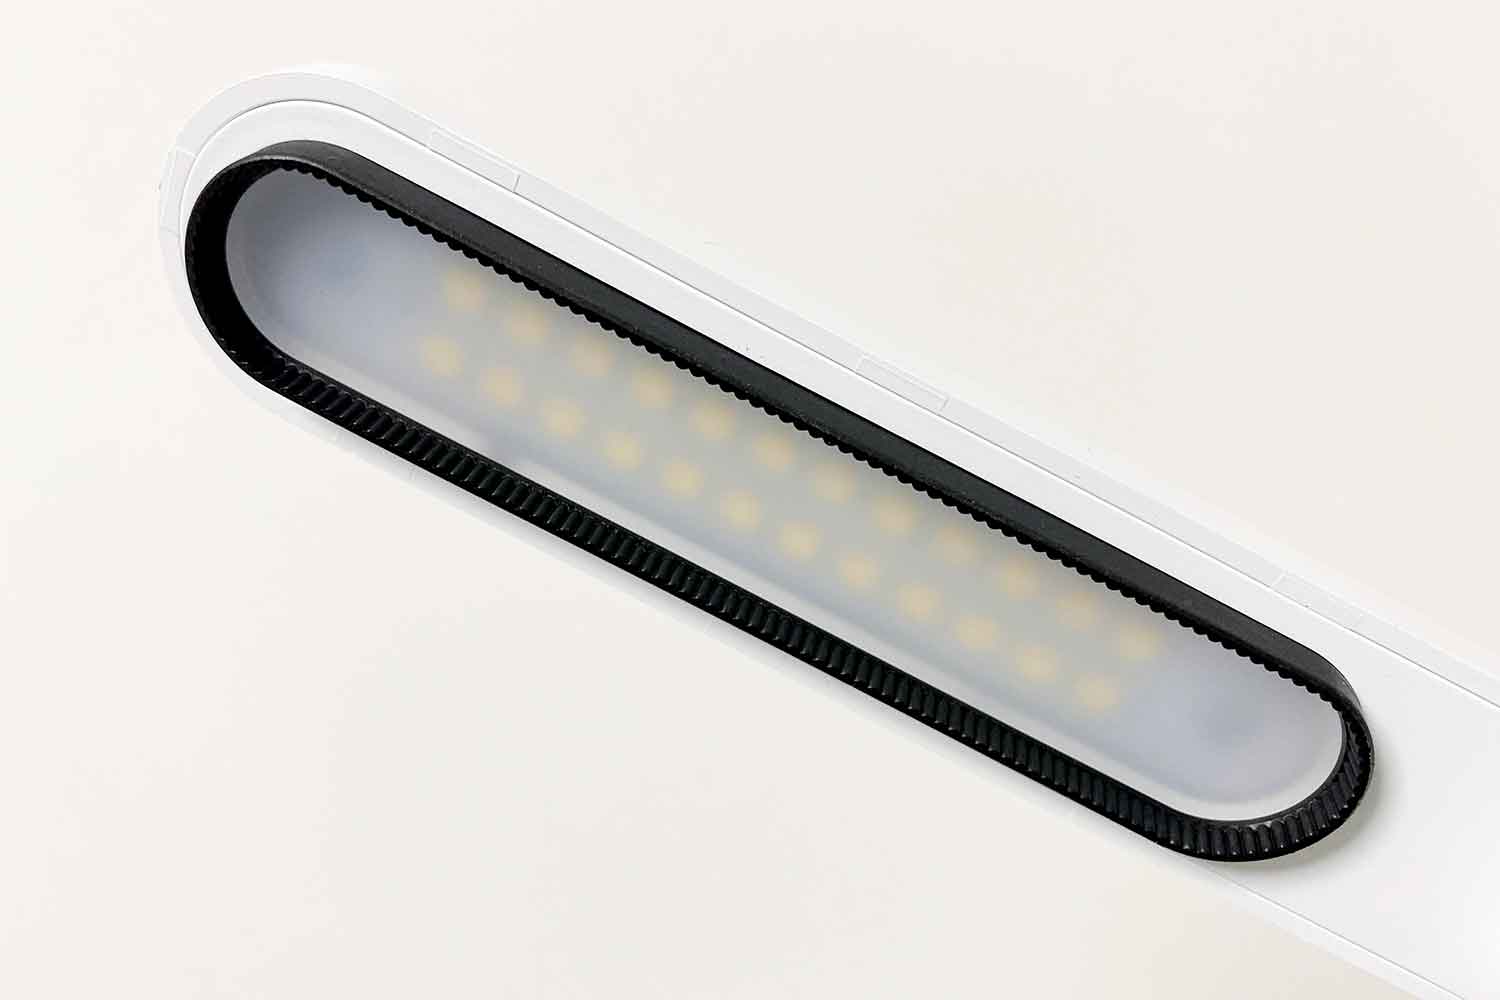 アイリスオーヤマ LEDライト コンパクト USB接続 写真 LDL-203H